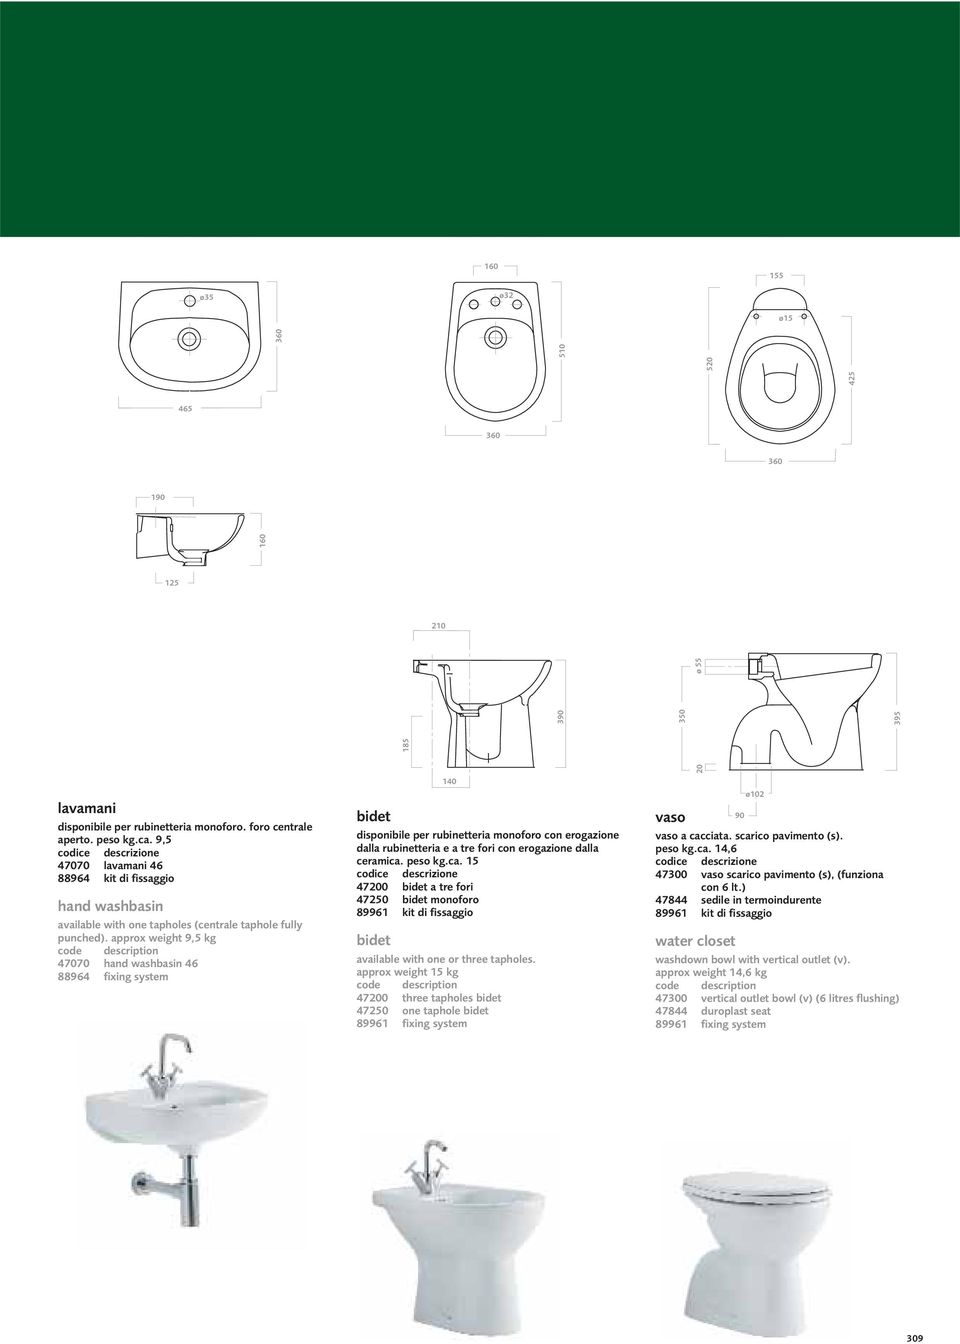 approx weight 9,5 kg 47070 hand washbasin 46 88964 fixing system bidet disponibile per rubinetteria monoforo con erogazione dalla rubinetteria e a tre fori con erogazione dalla ceramica.